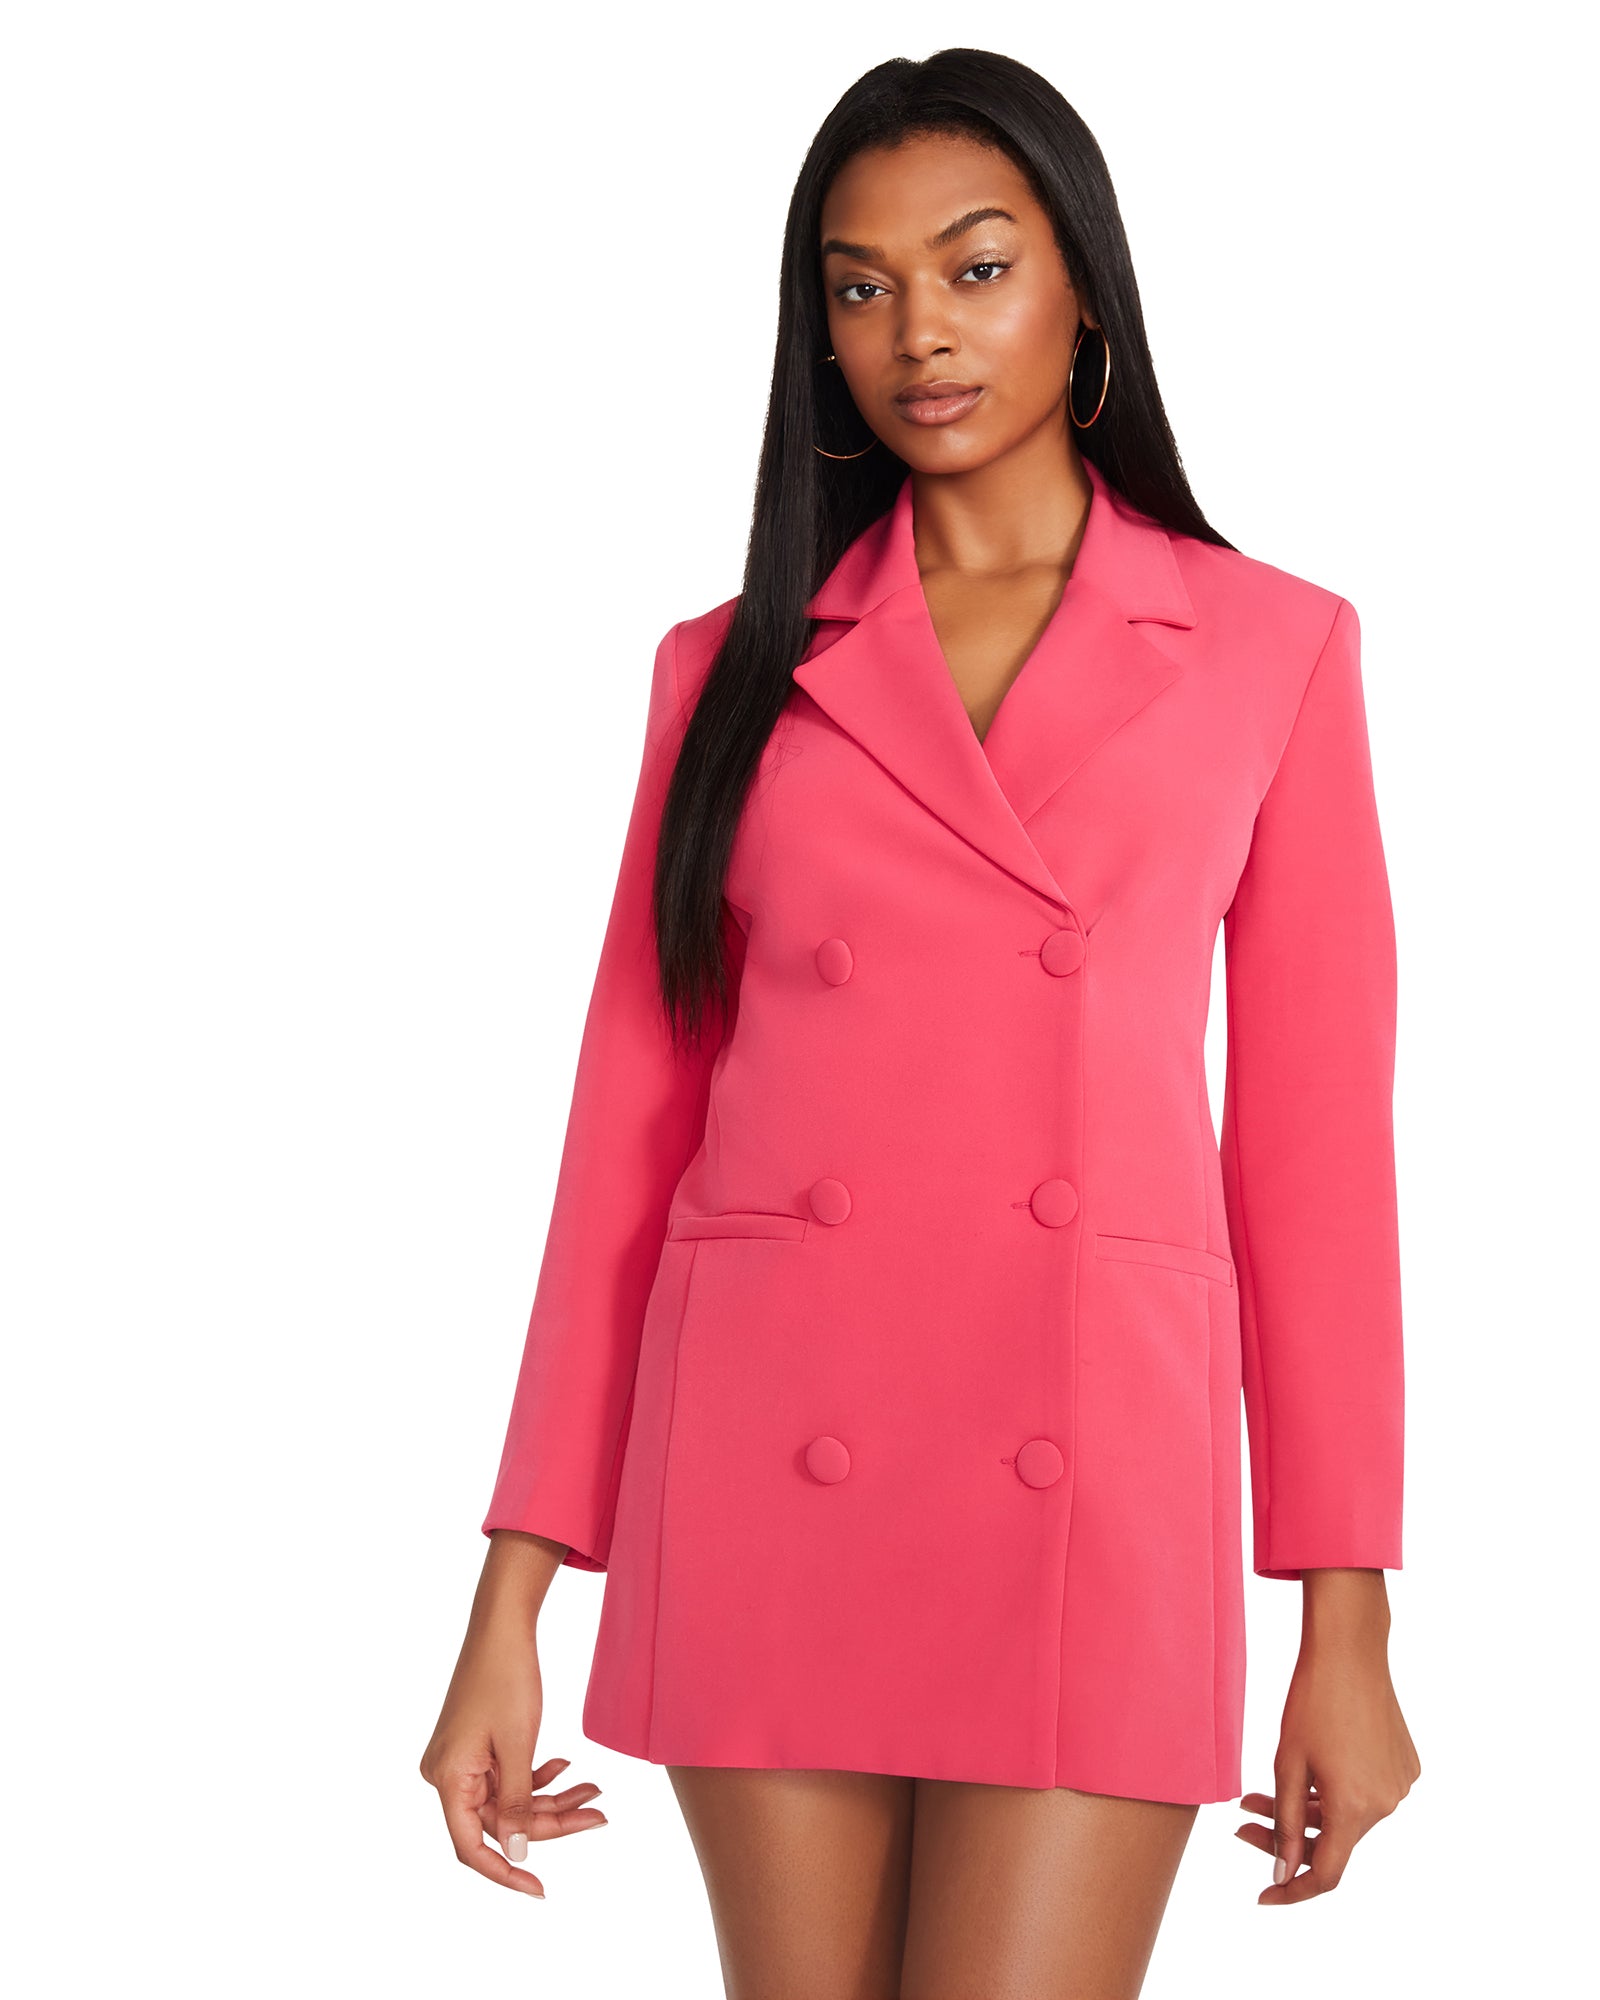 REAGAN Dress Hot Pink | Women's Blazer Dress – Steve Madden